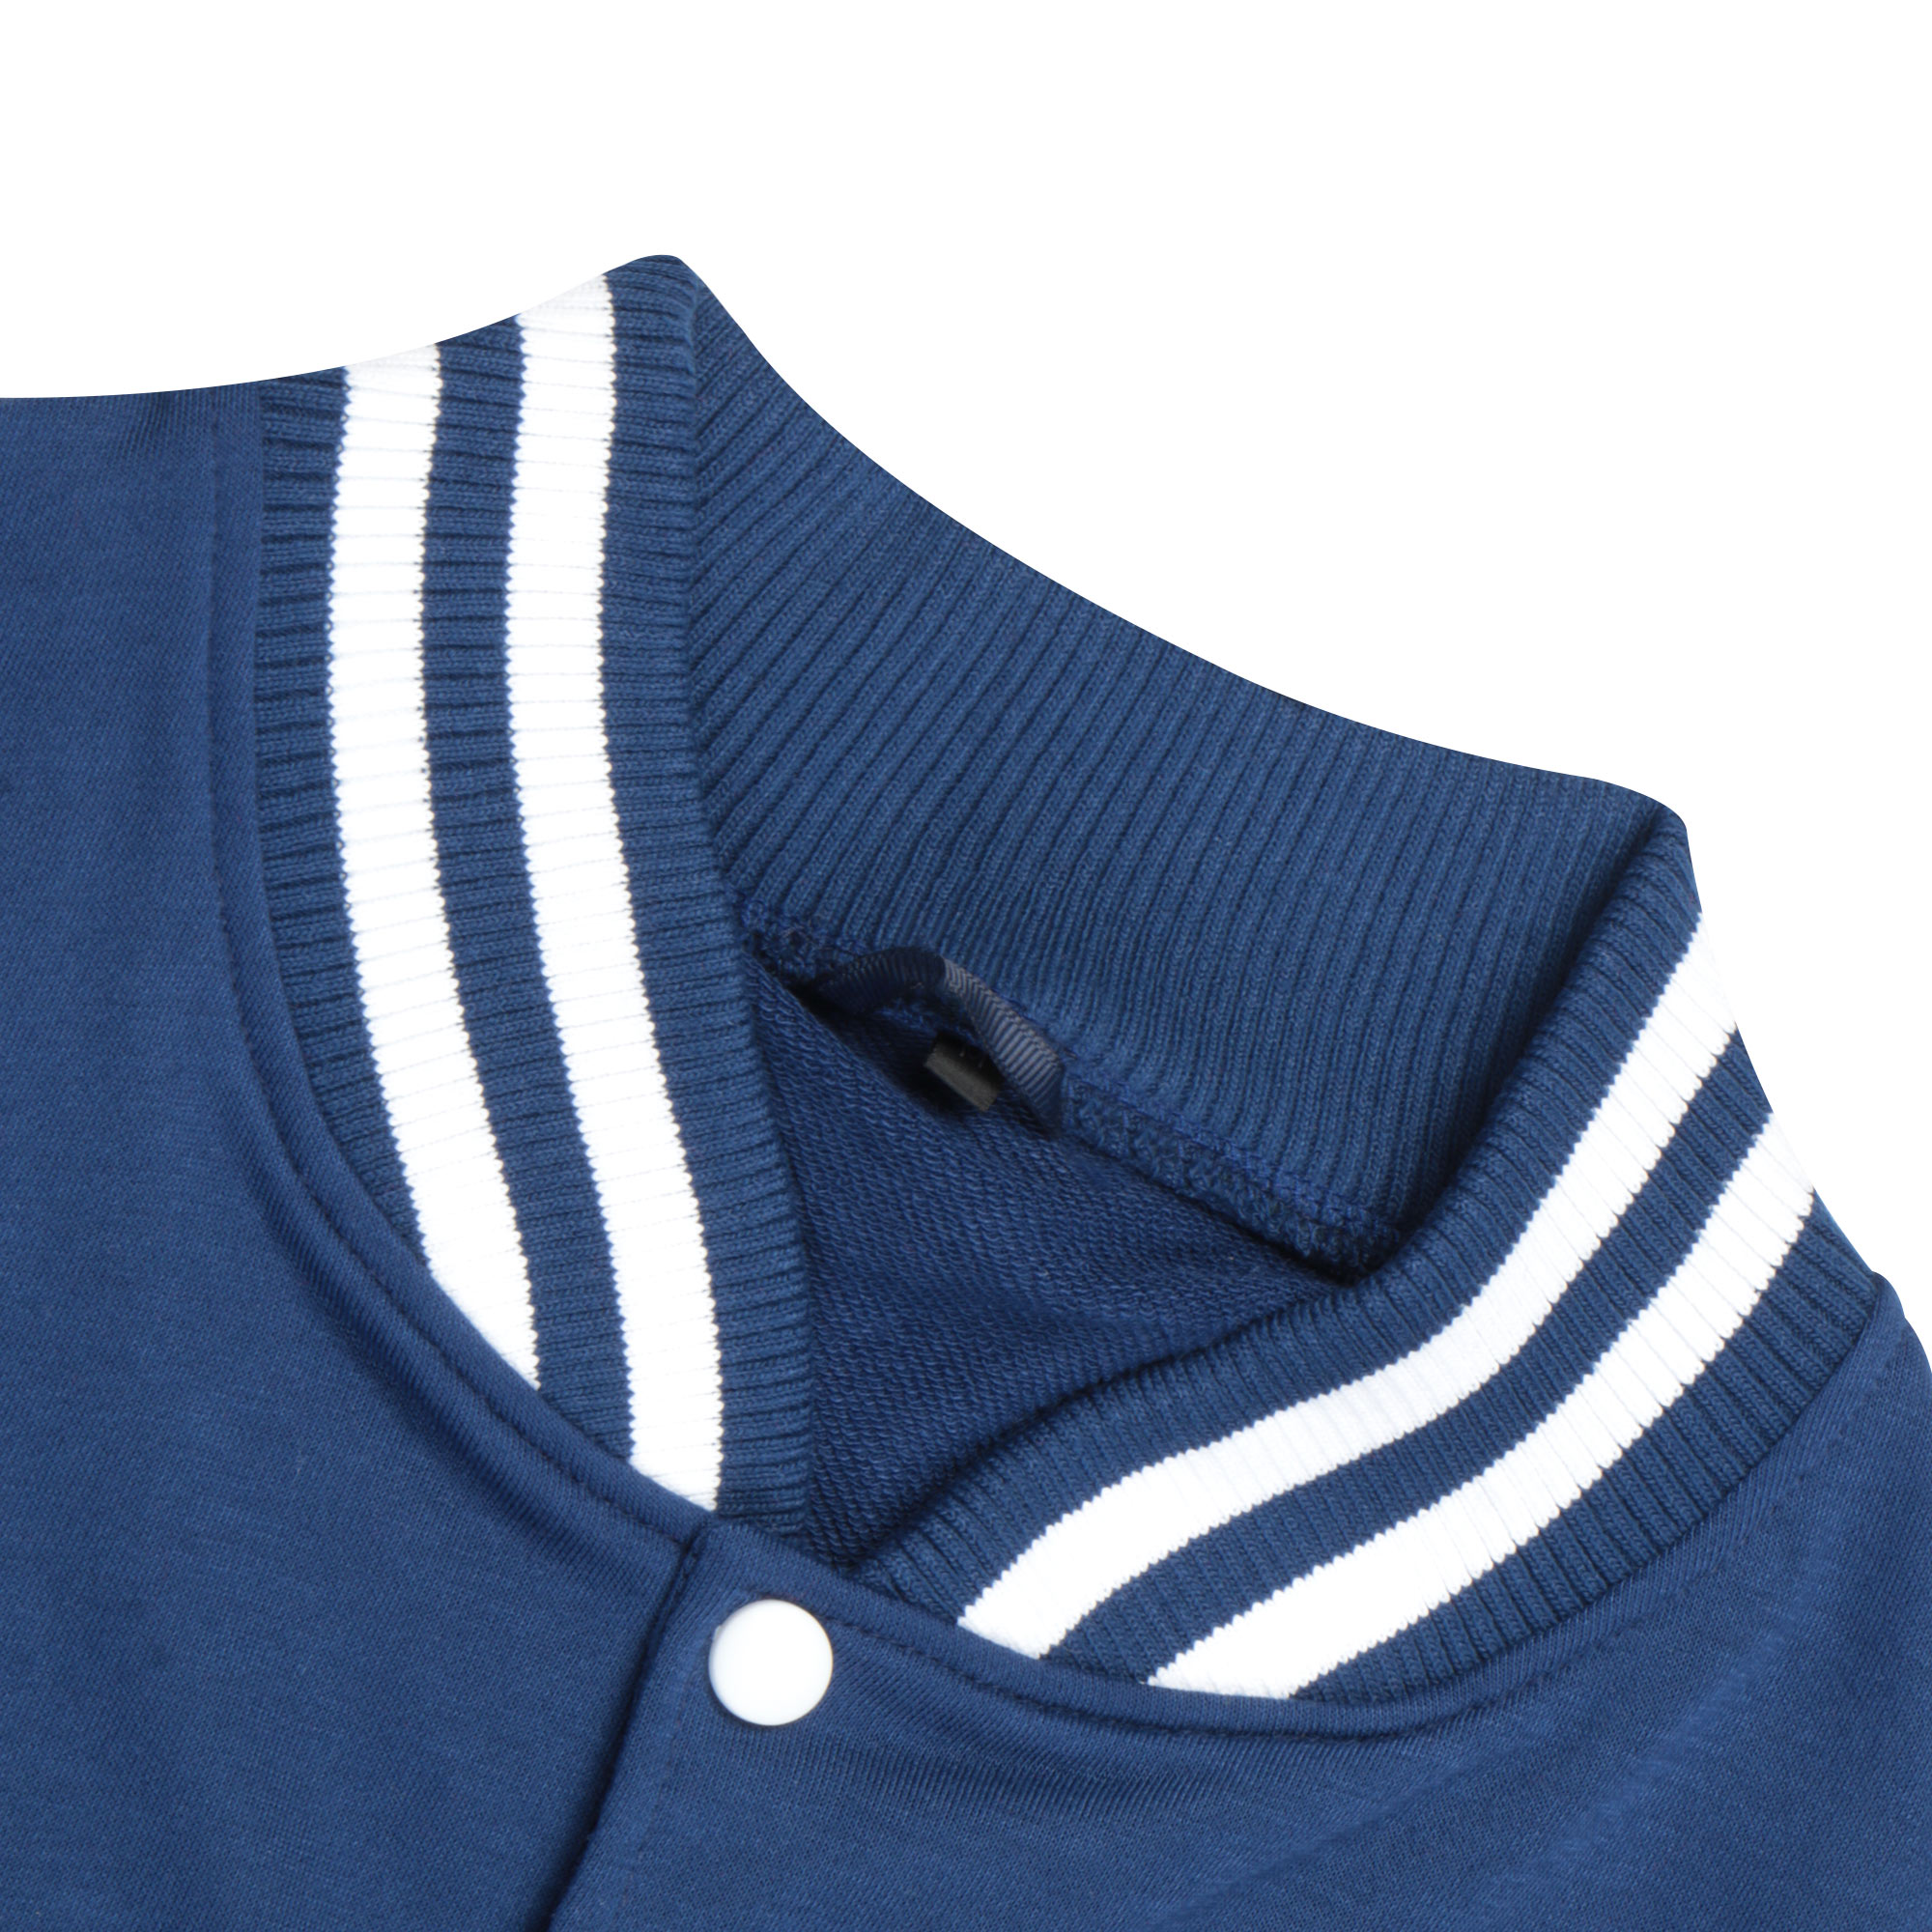 Бомбер Garment тёмно-синий/белый XL полиэстер, цвет темно-синий, размер XL - фото 2